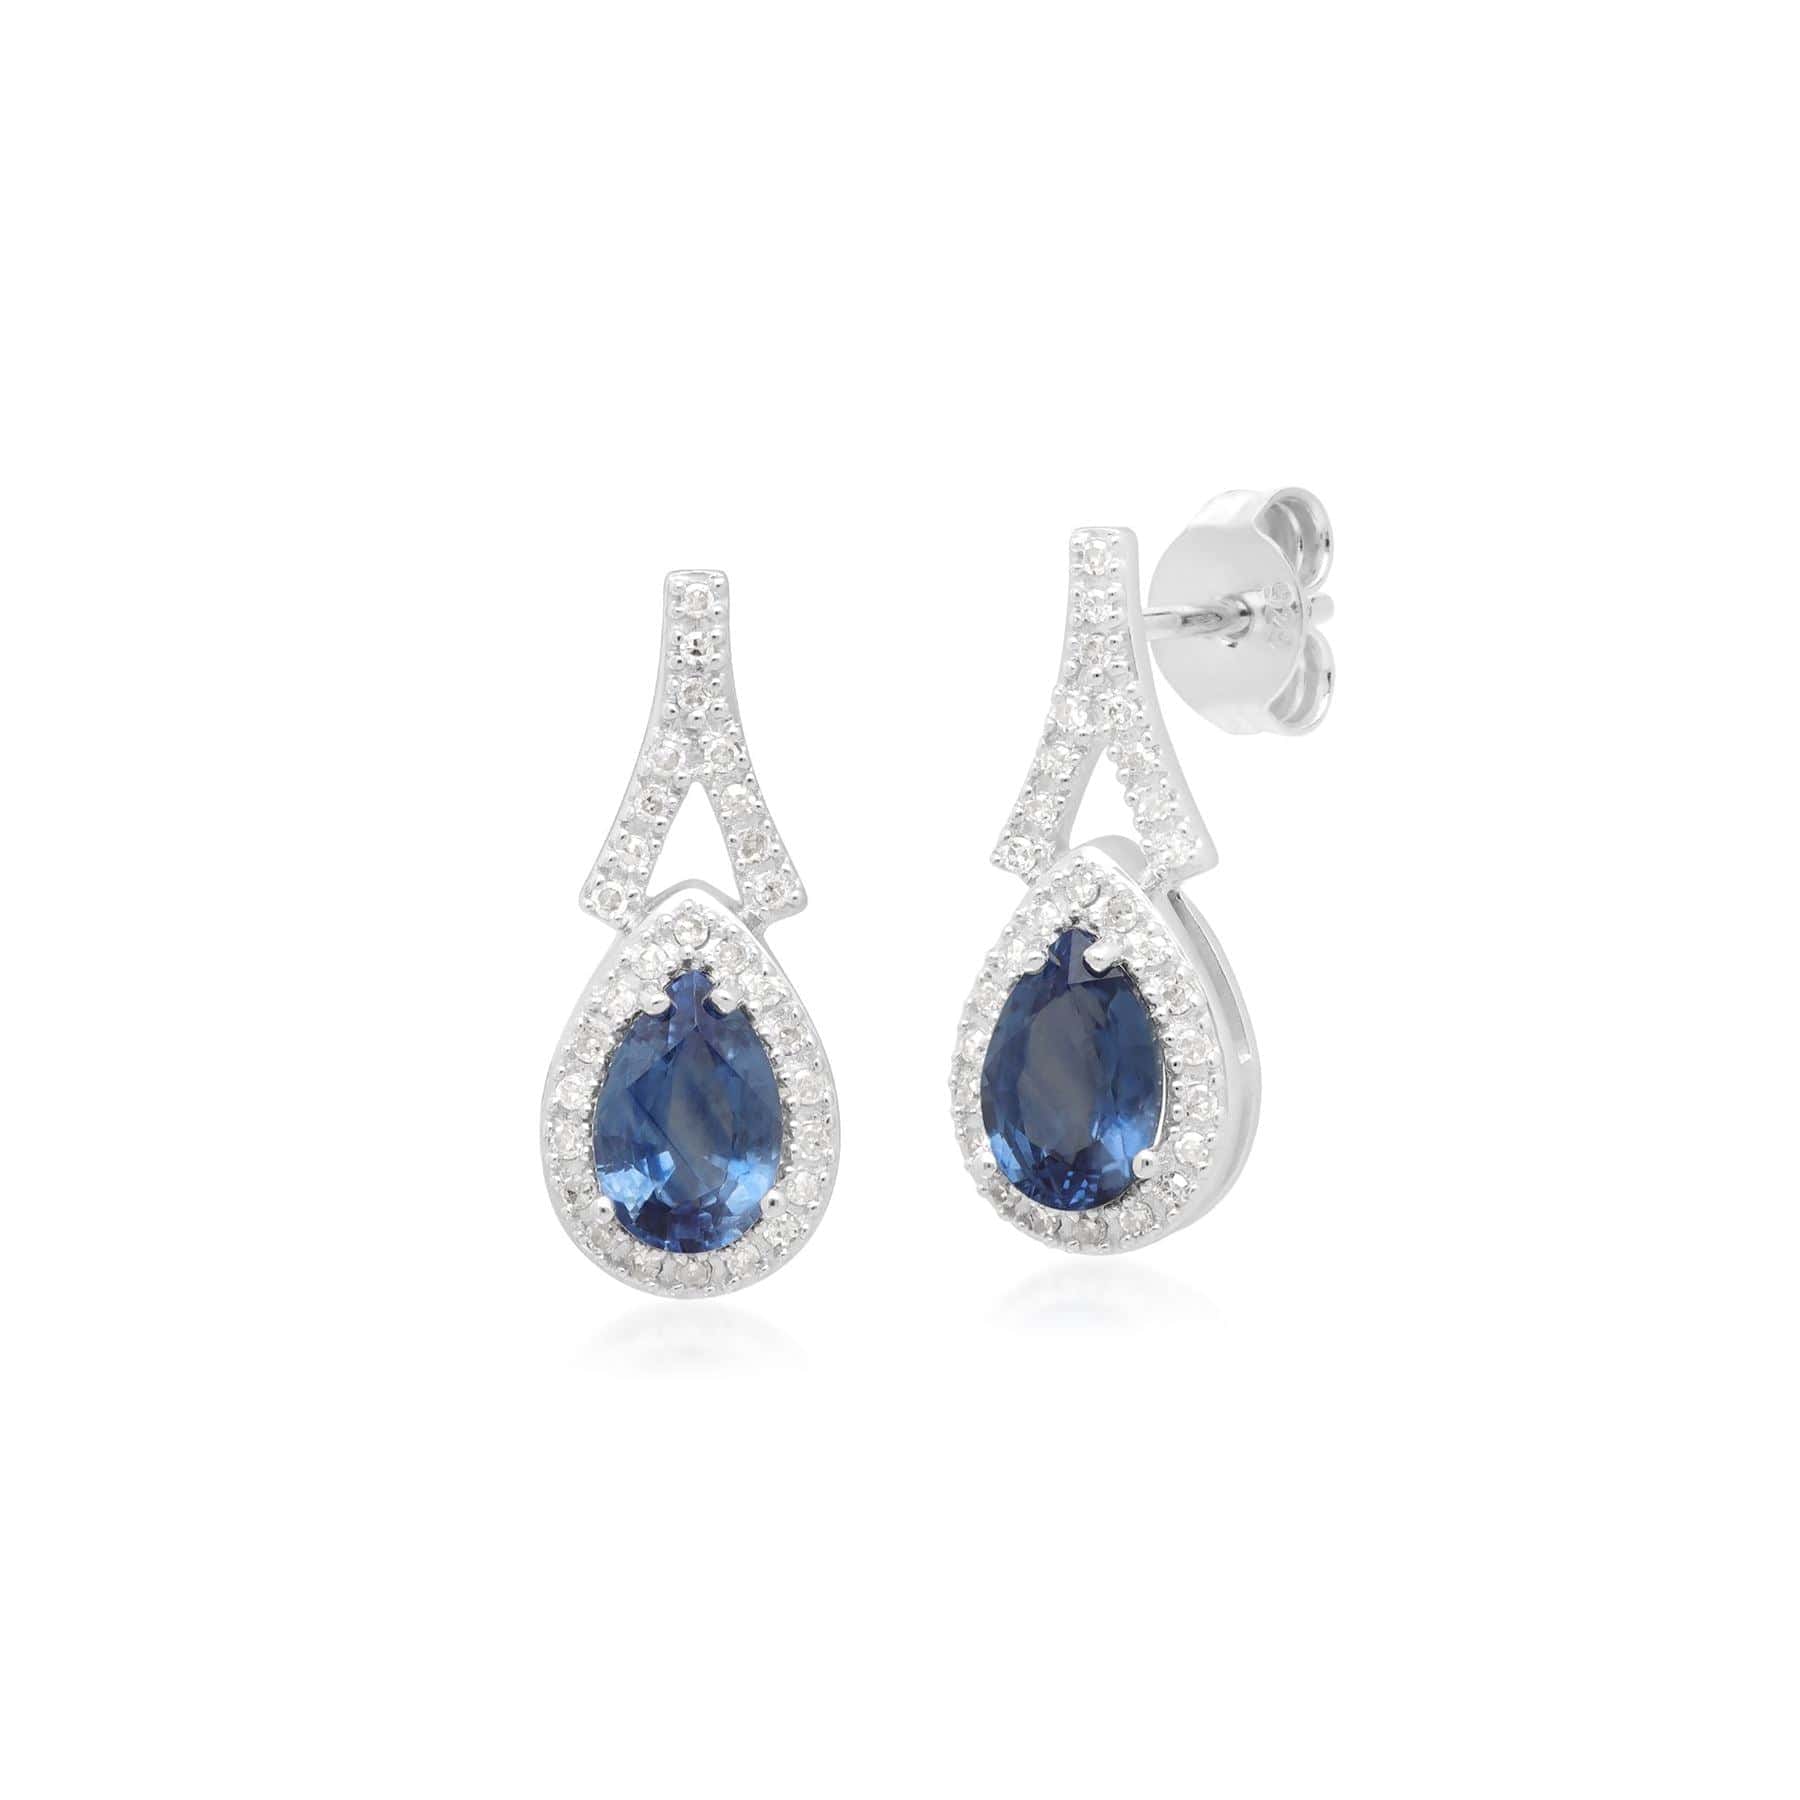 Teardrop Luxe Blue Sapphire & Diamond Drop Earrings in 9ct White Gold